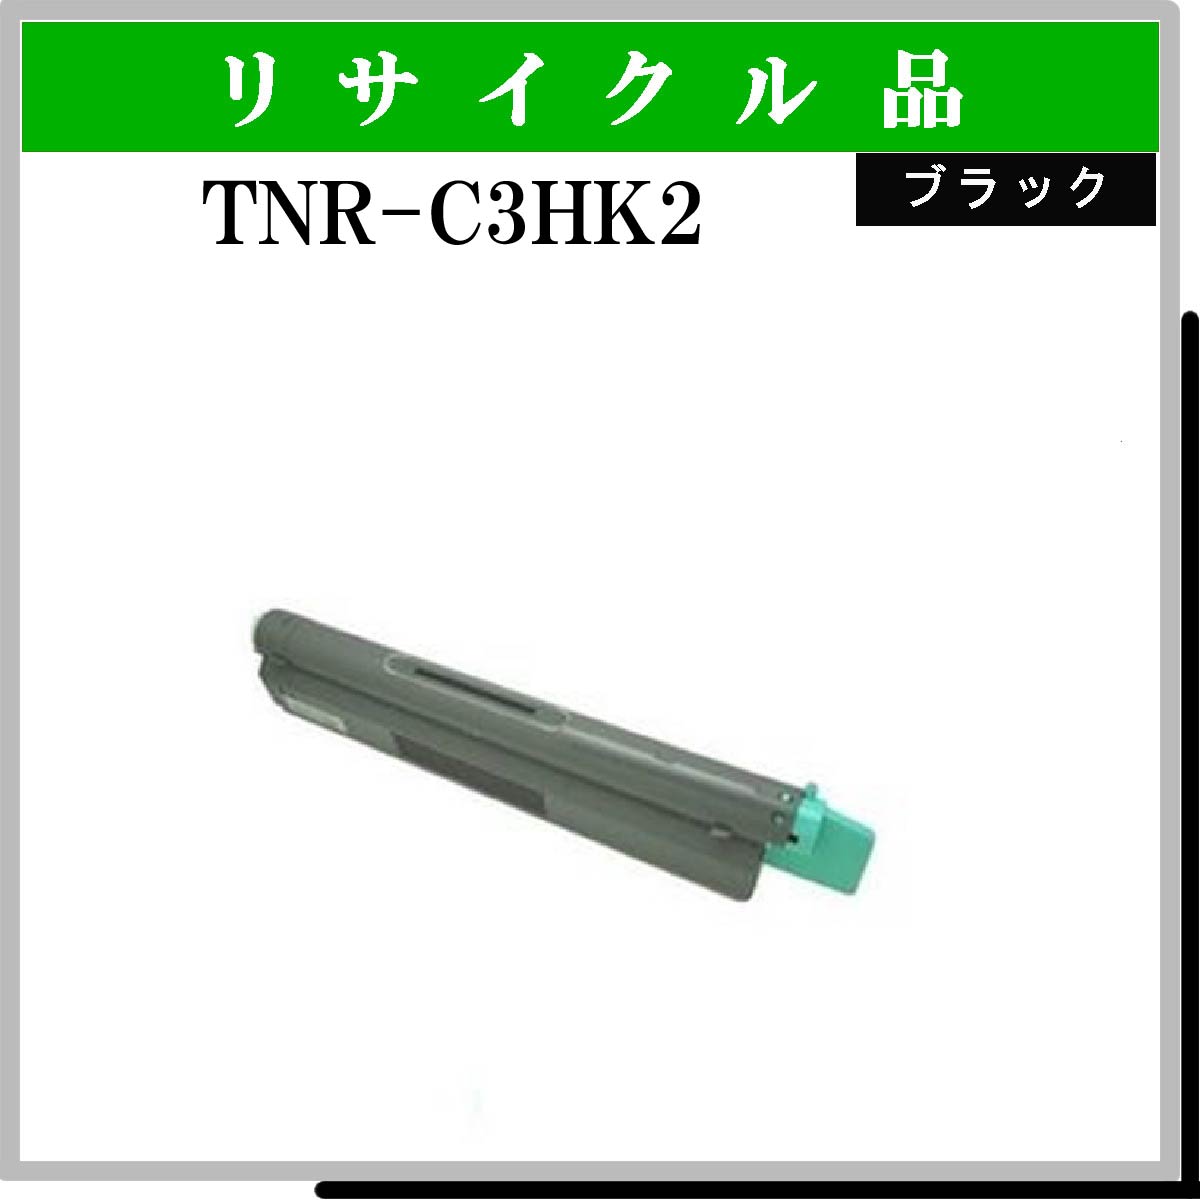 TNR-C3HK2